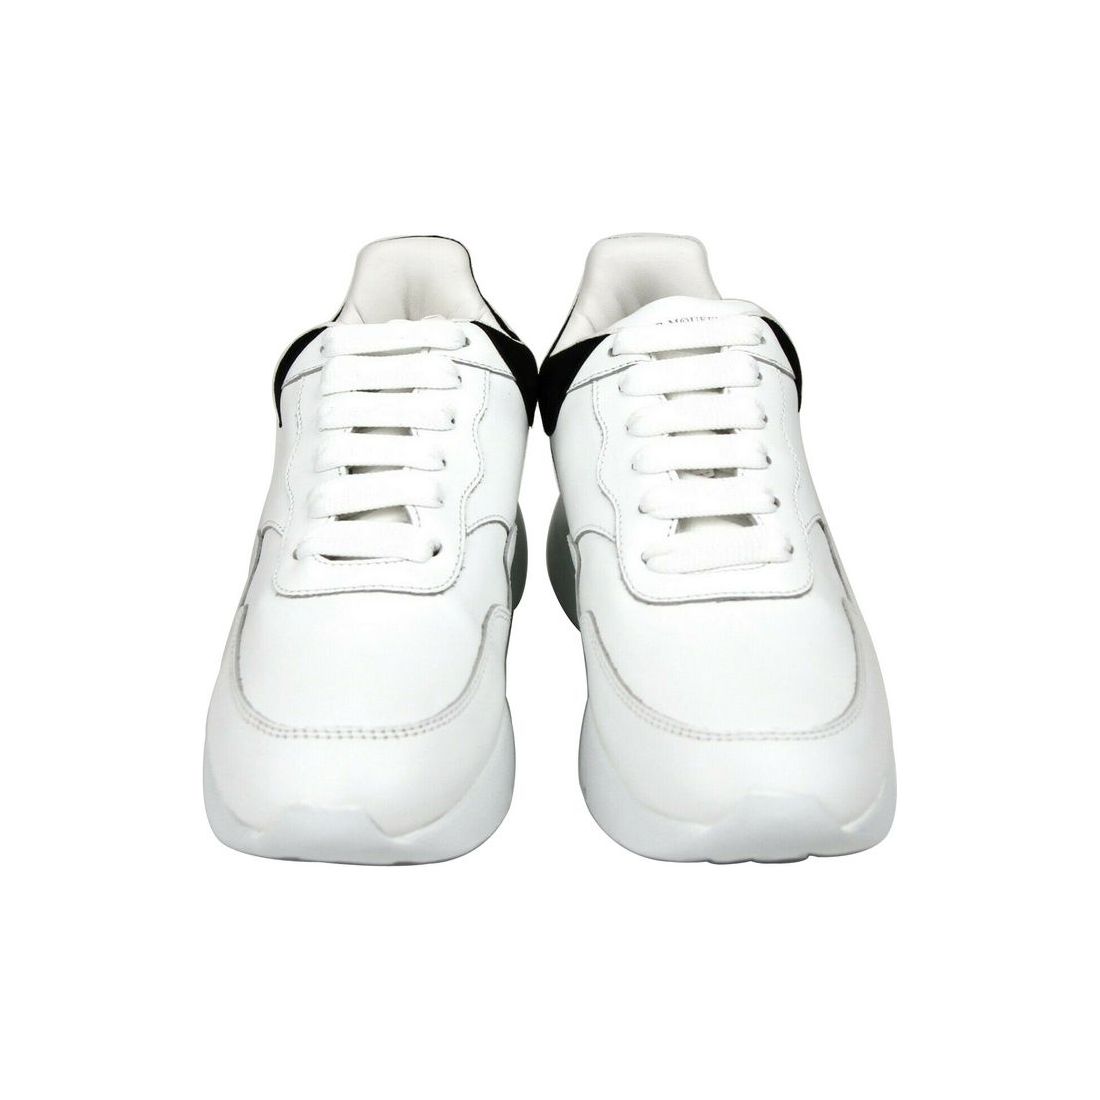 Alexander McQueen Alexander McQueen Women White Leather Suede Sneaker alexander-mcqueen-women-white-leather-suede-sneaker 508291-9061-39__3-da340dfe-0f6.jpg